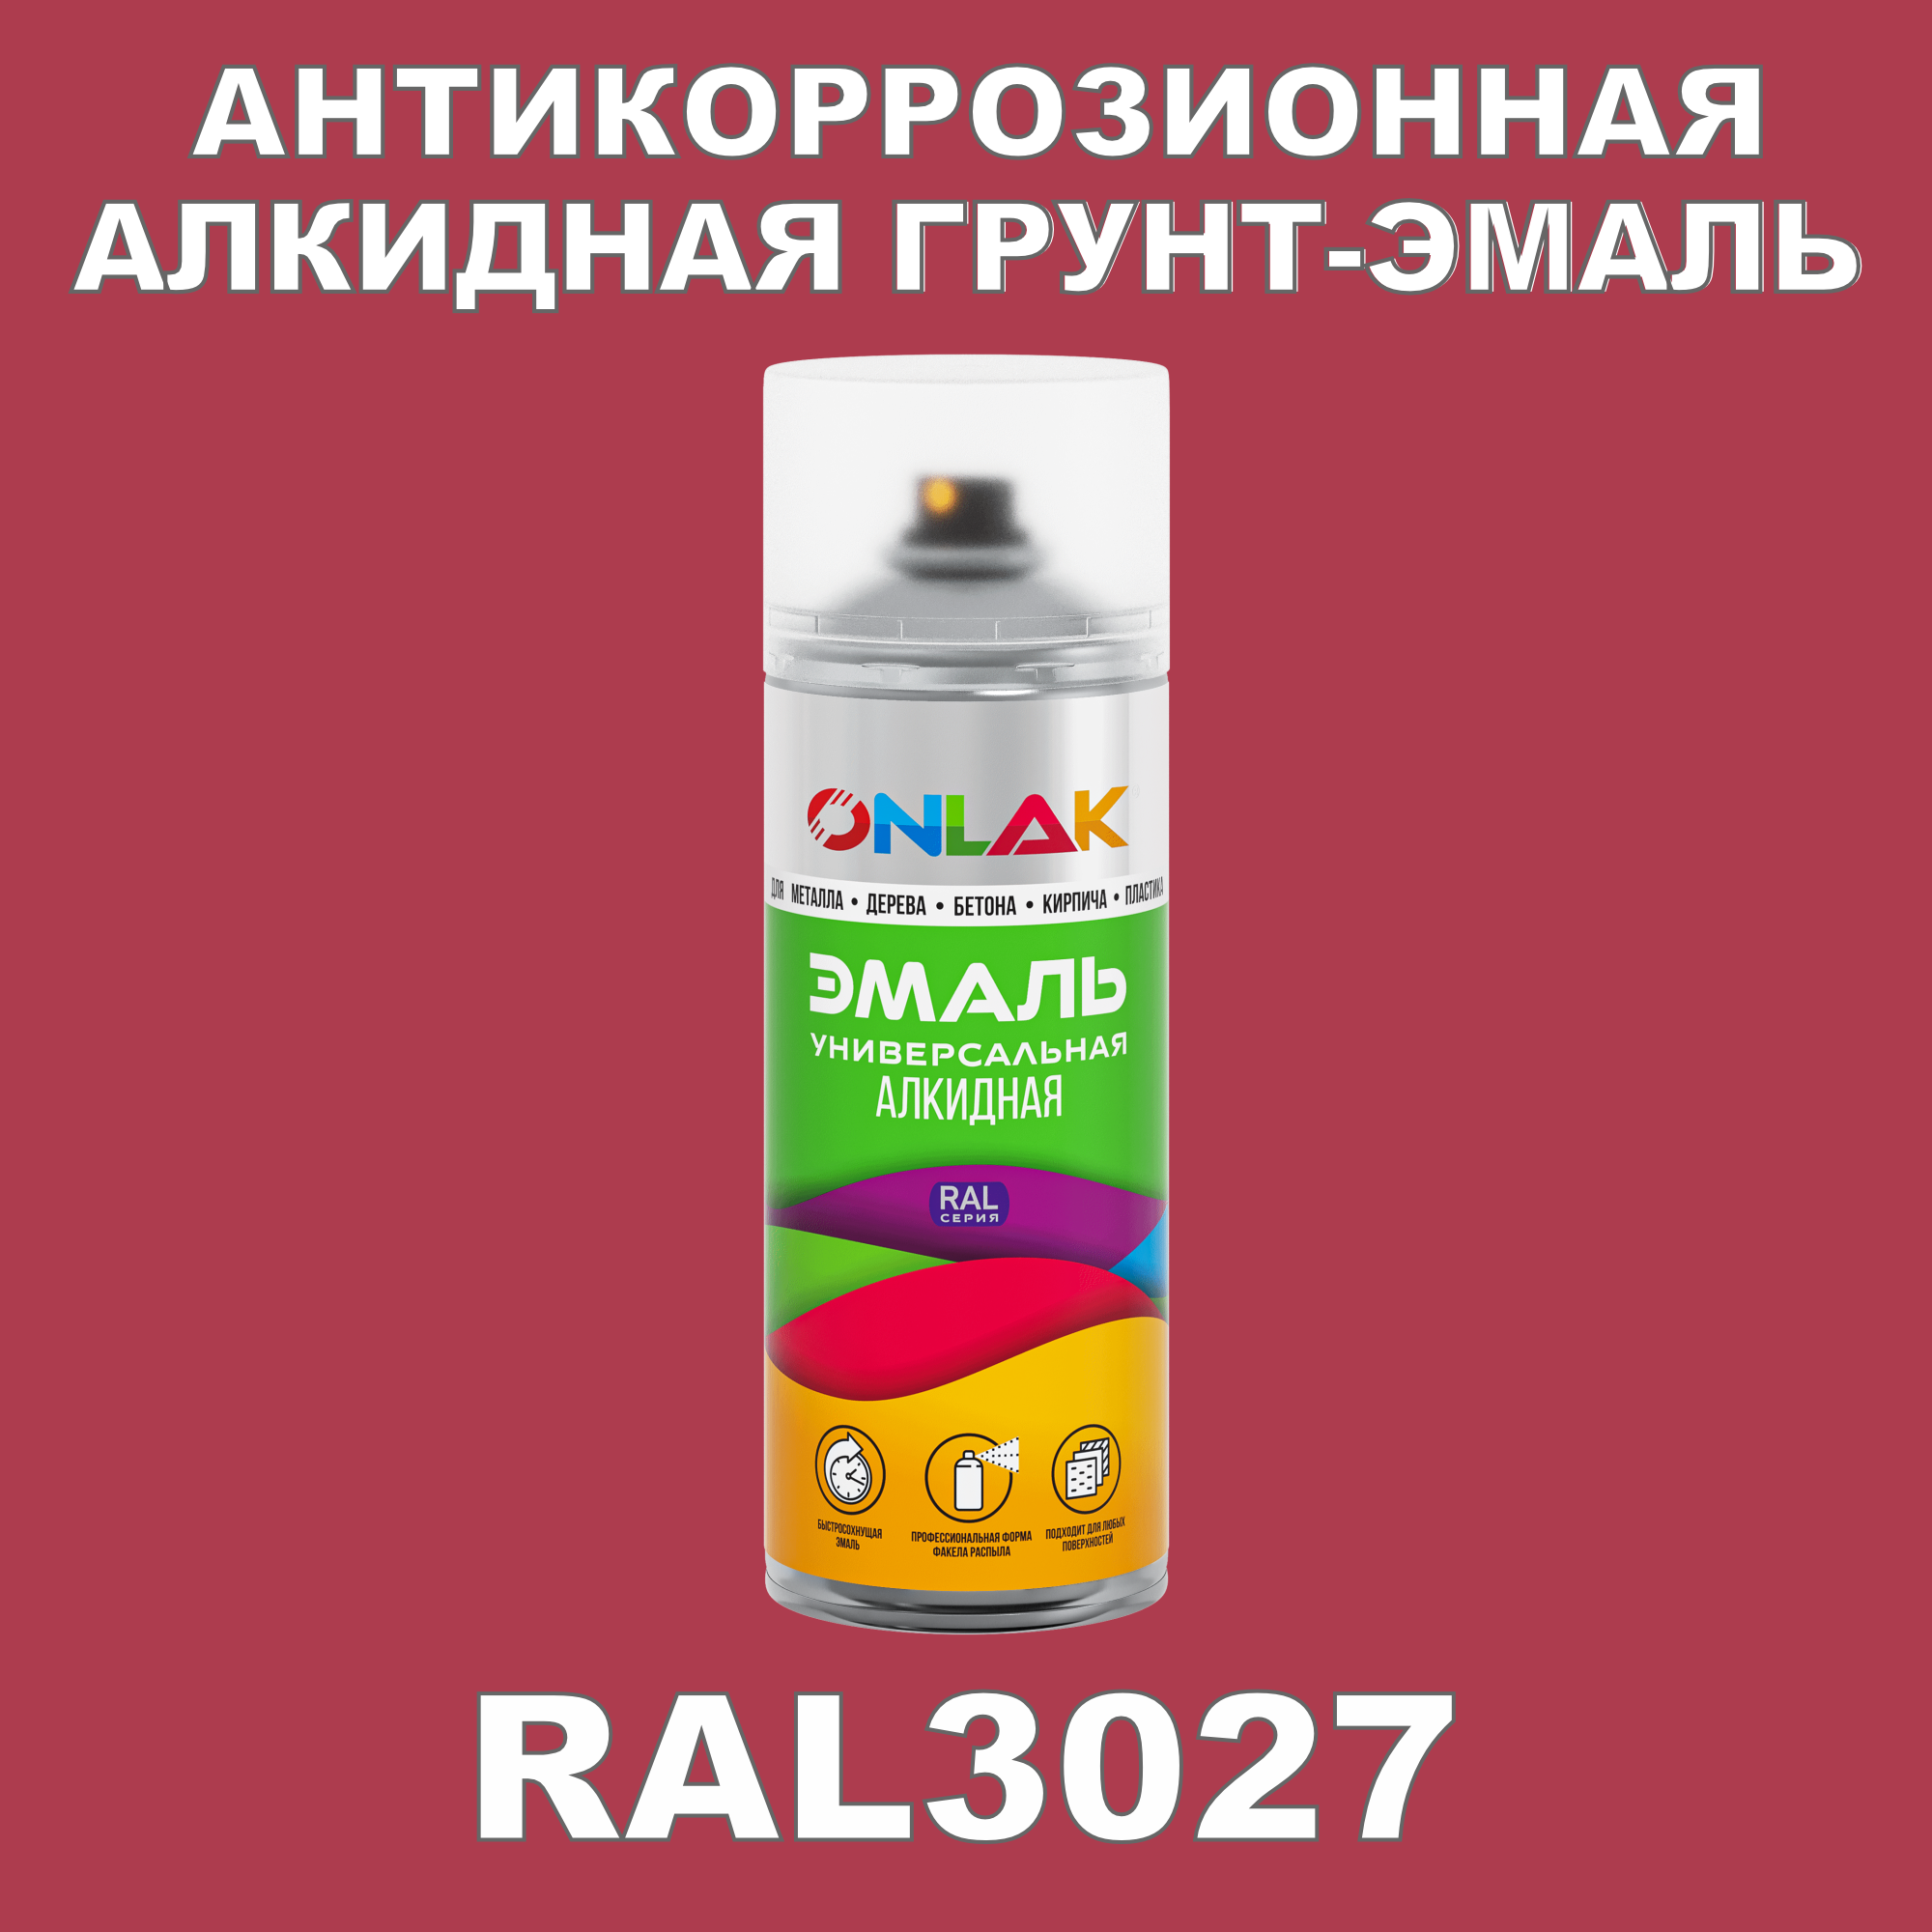 Антикоррозионная грунт-эмаль ONLAK RAL3027 полуматовая для металла и защиты от ржавчины